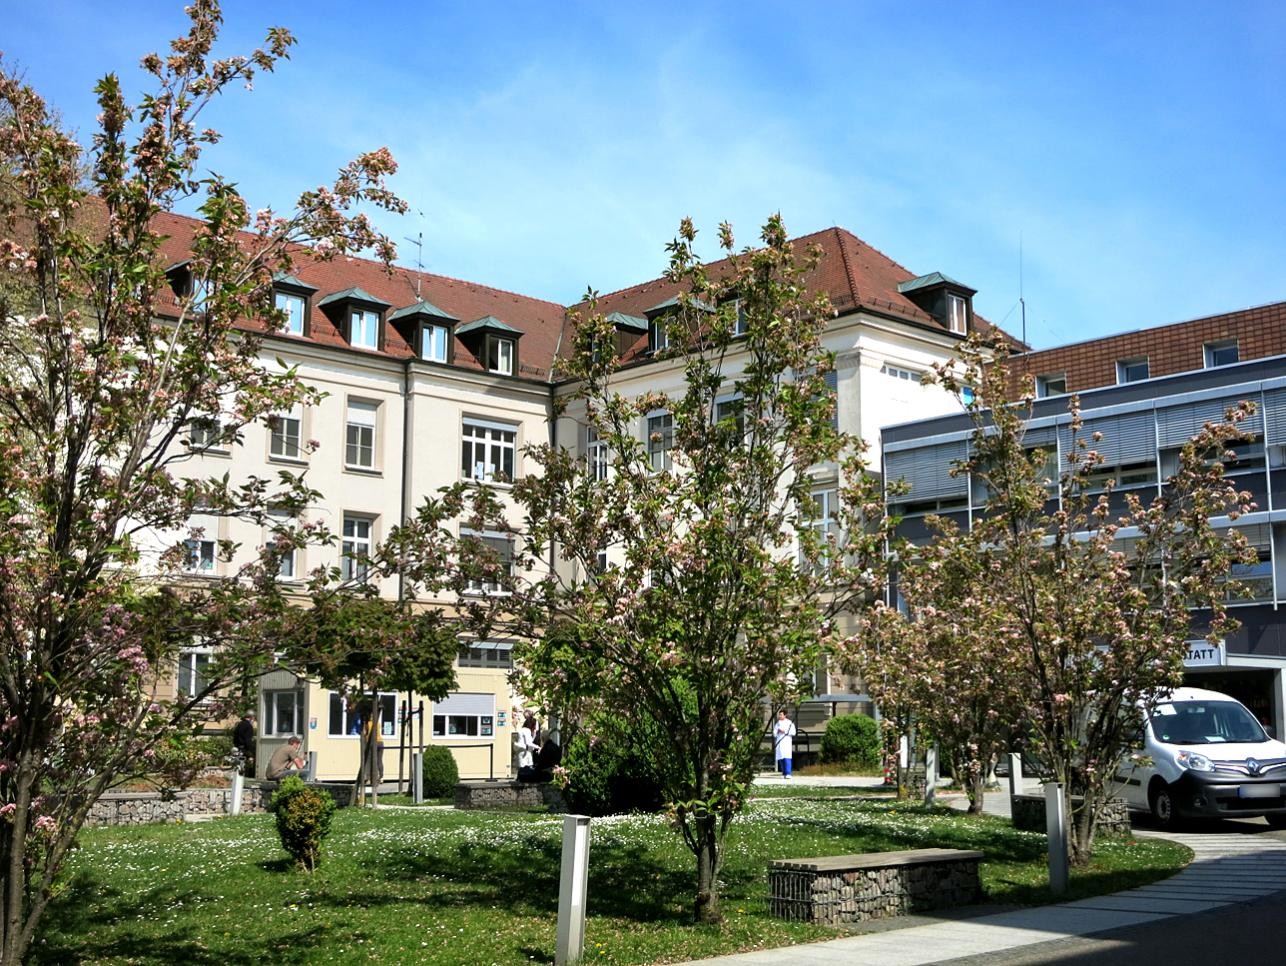 La clinique de Rastatt, située dans la Engelstraße, sera abandonnée lorsque le nouveau centre hospitalier central sera disponible.